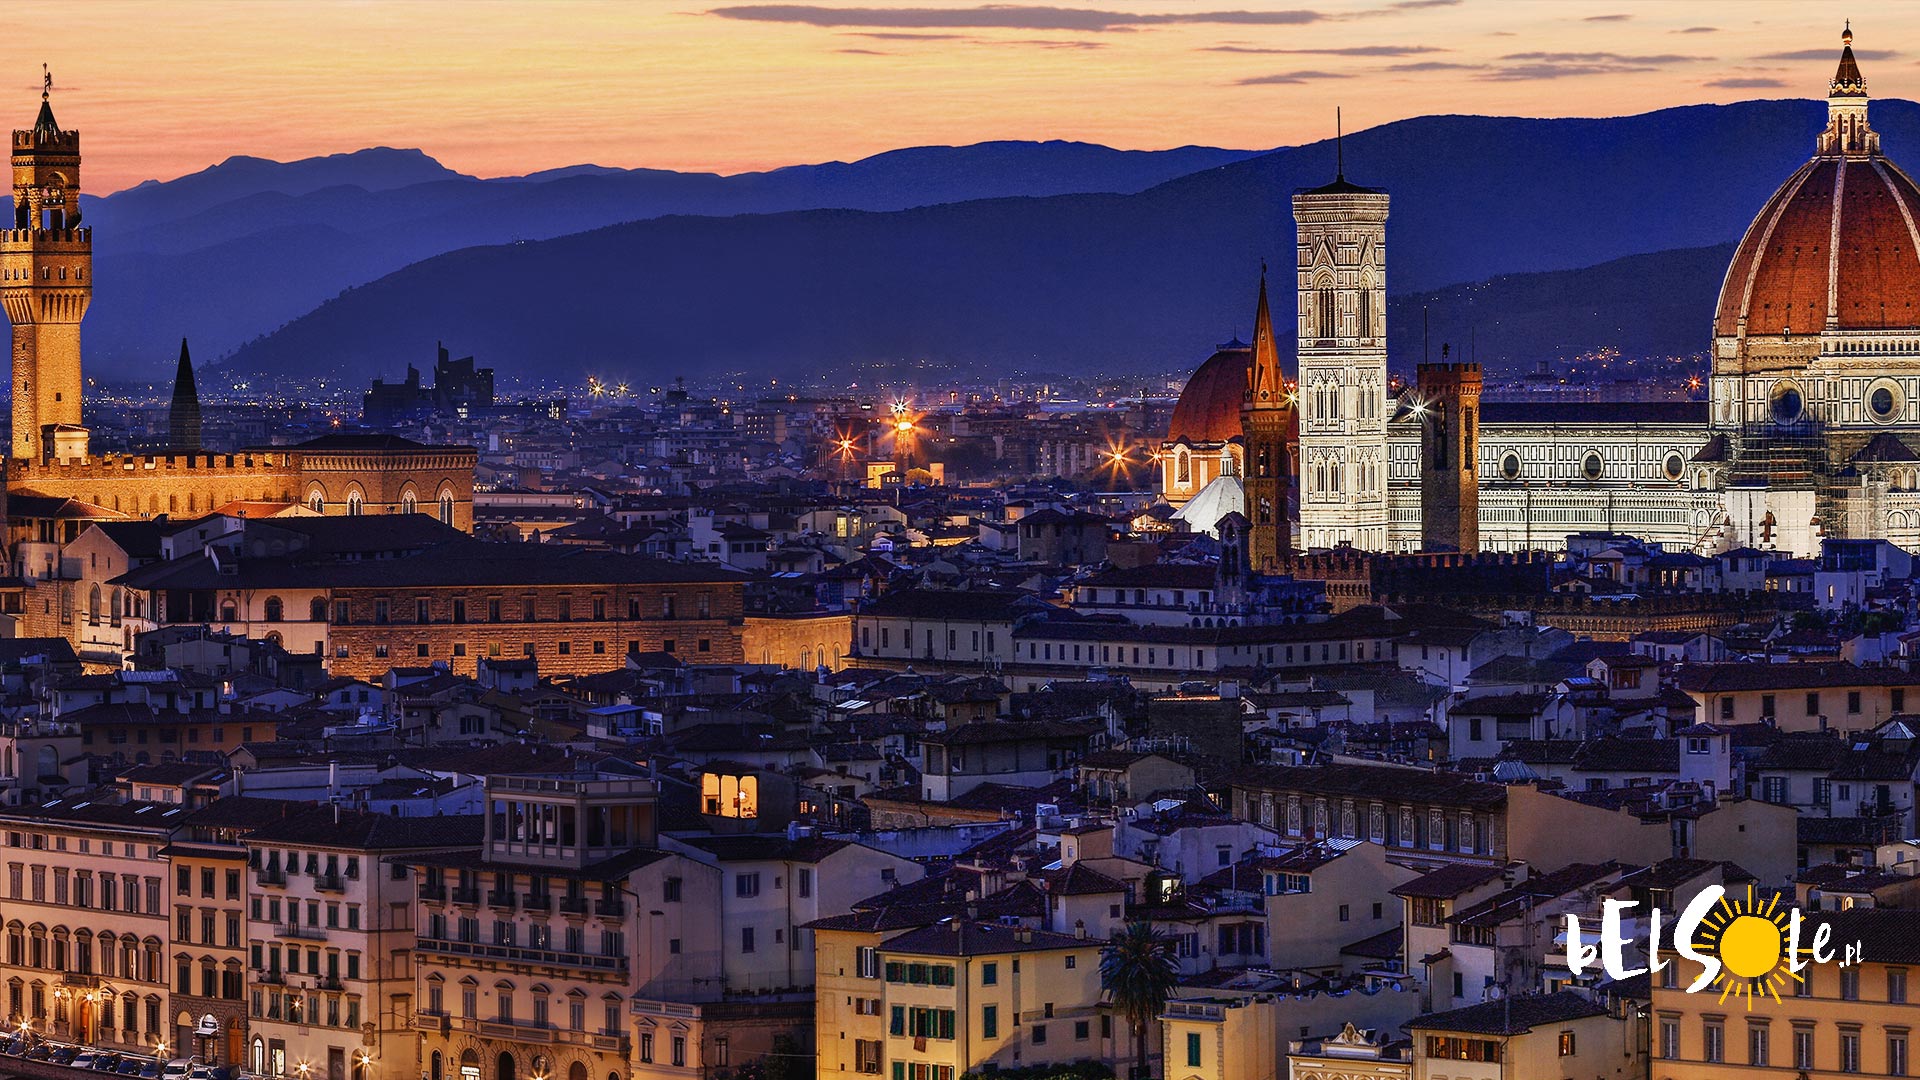 Florencja W Zimie Dlaczego Warto Odwiedzic To Miasto W Styczniu Lutym Listopadzie I Grudniu Belsole